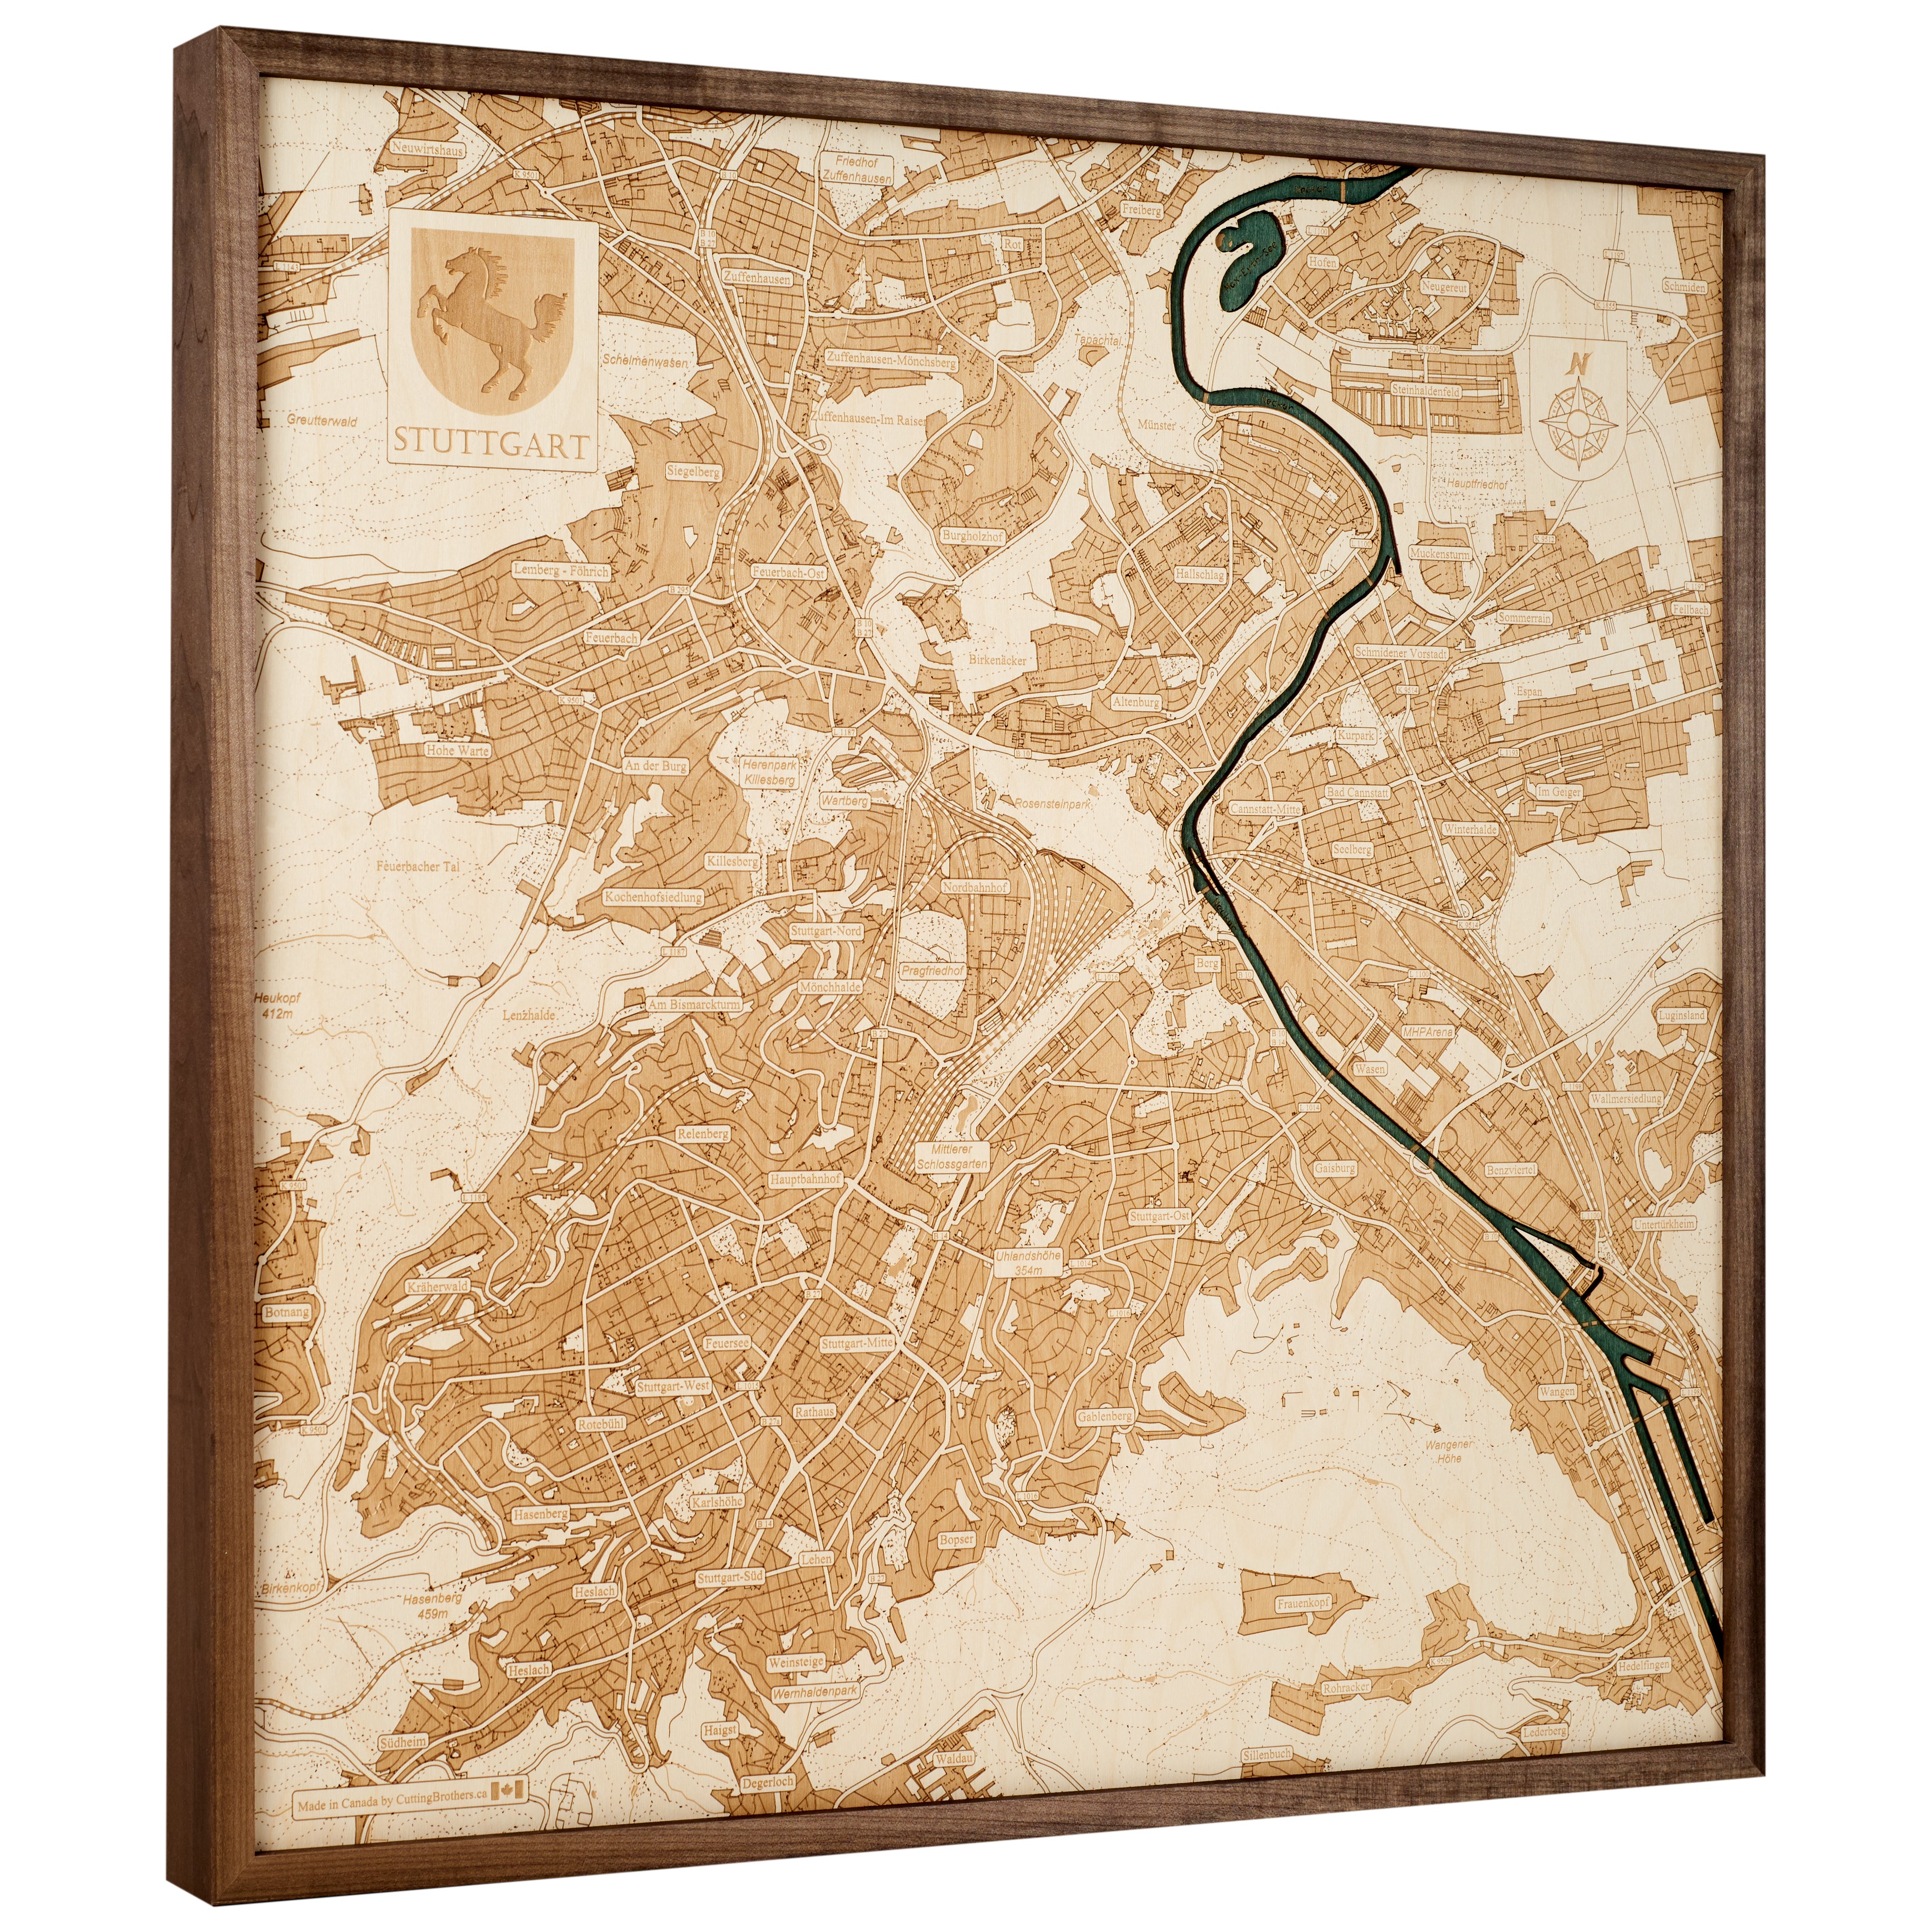 STUTTGART 3D wooden wall map - version L 